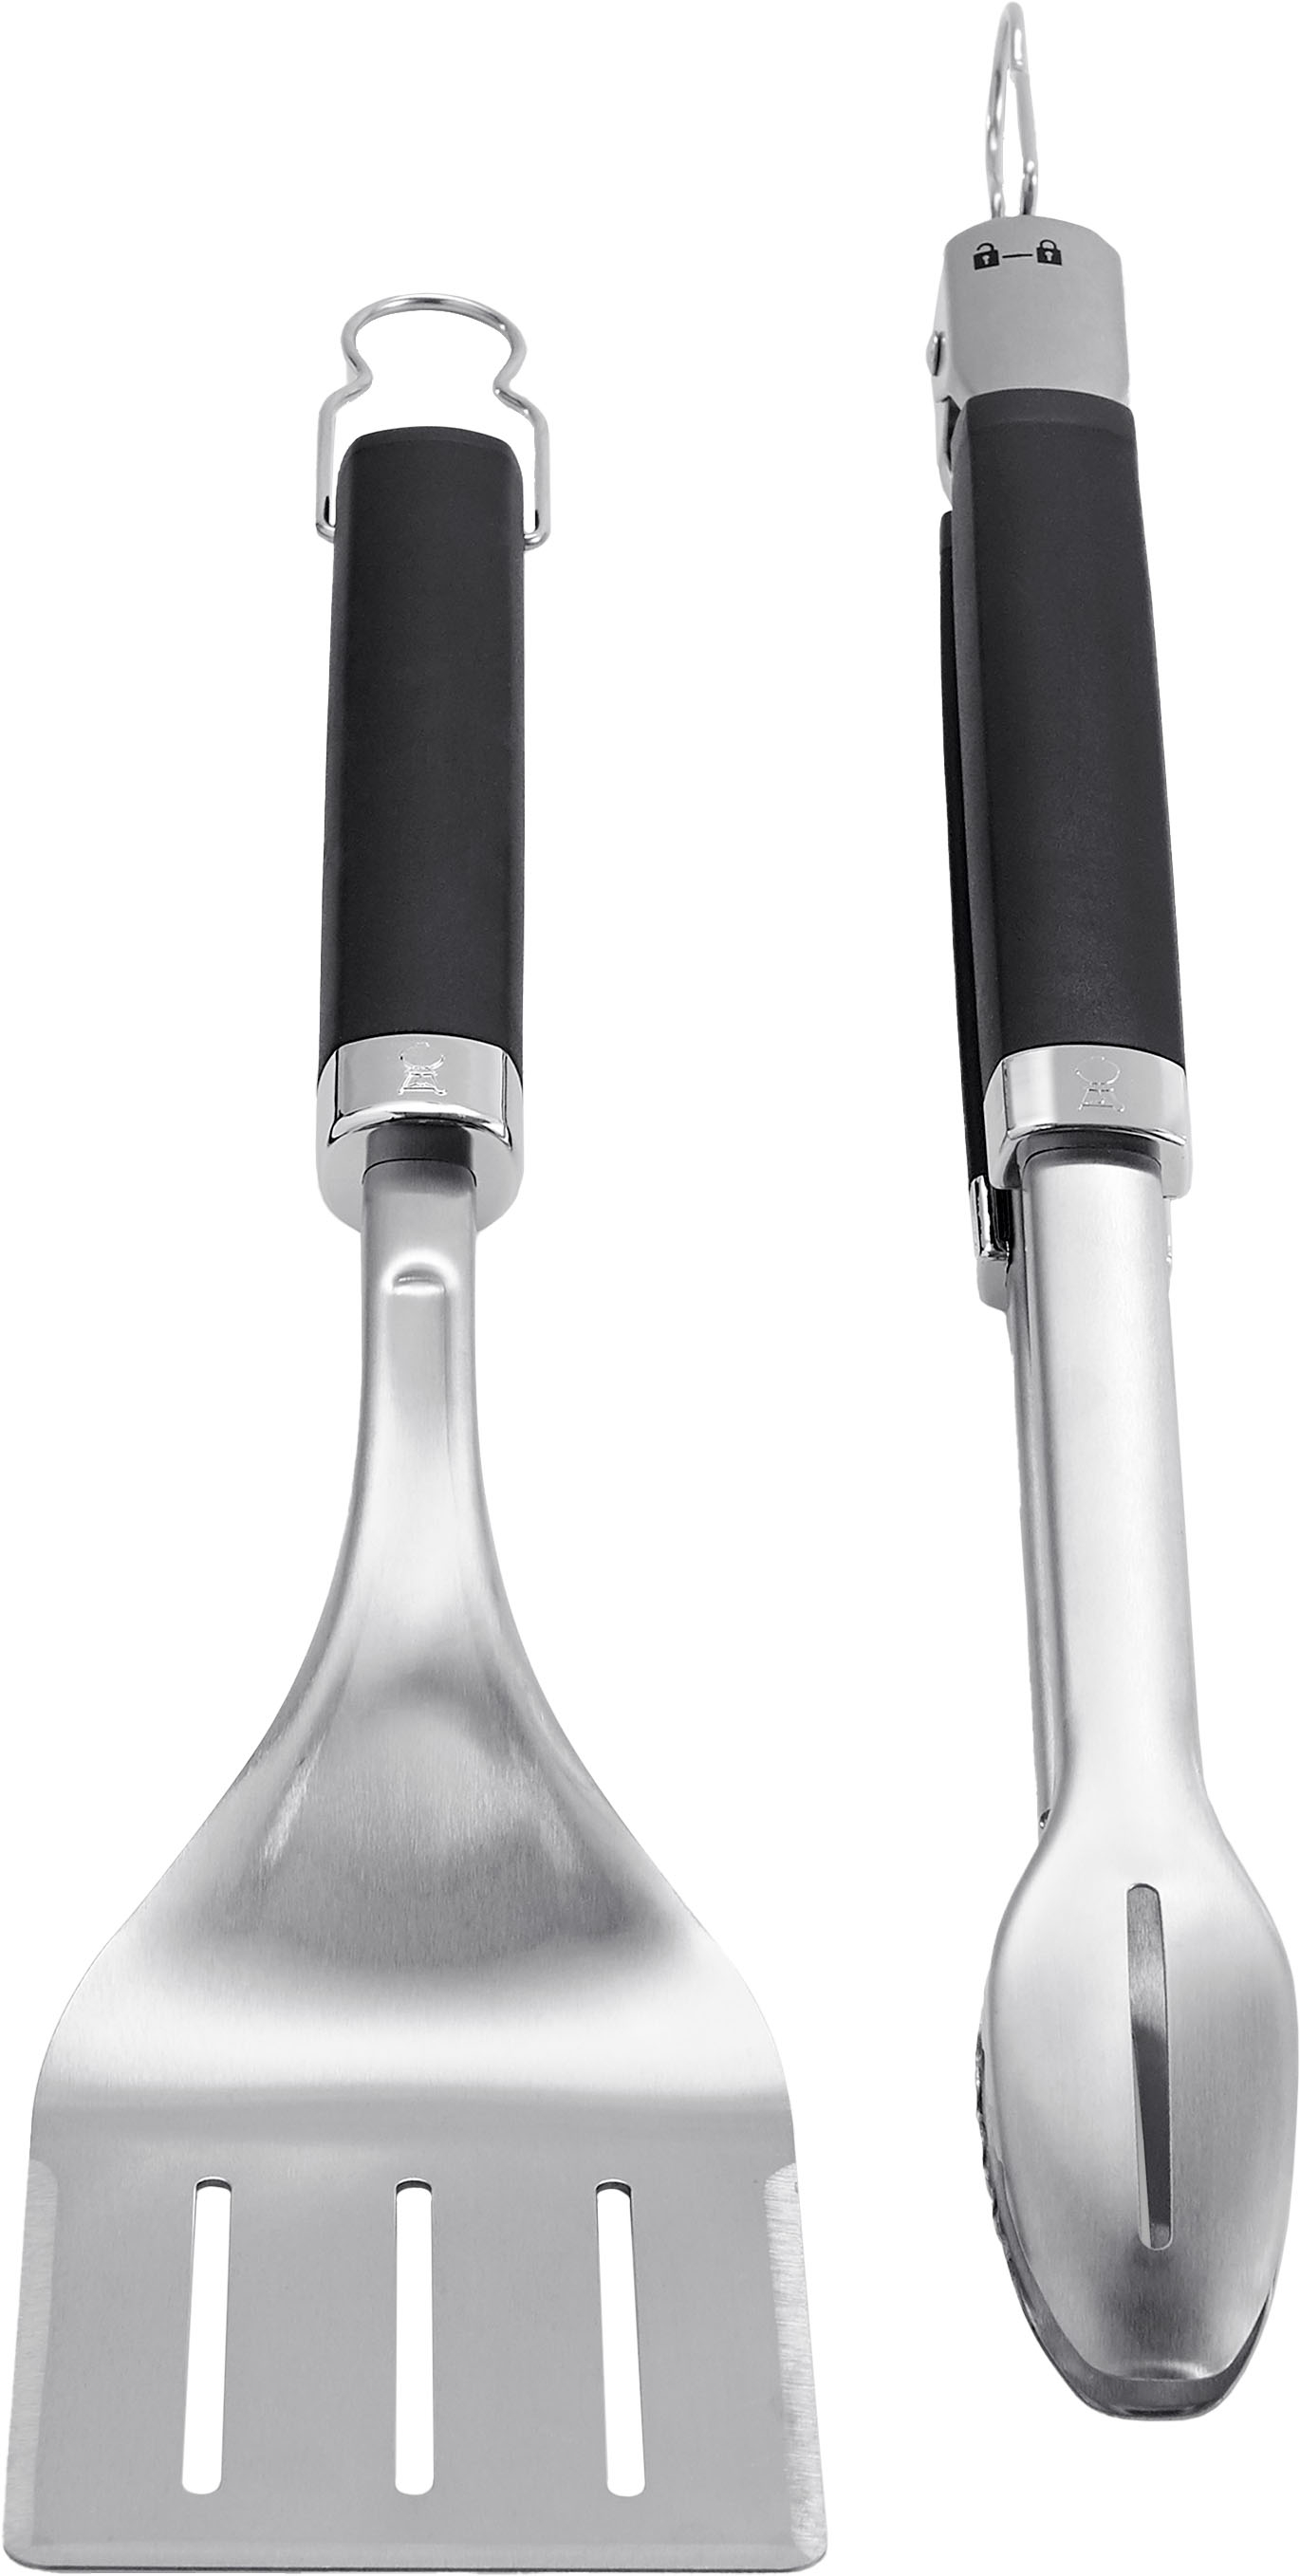 品)All-Clad T147 Stainless Steel Tongs Spatula Fork and Brush BBQ Tools C 